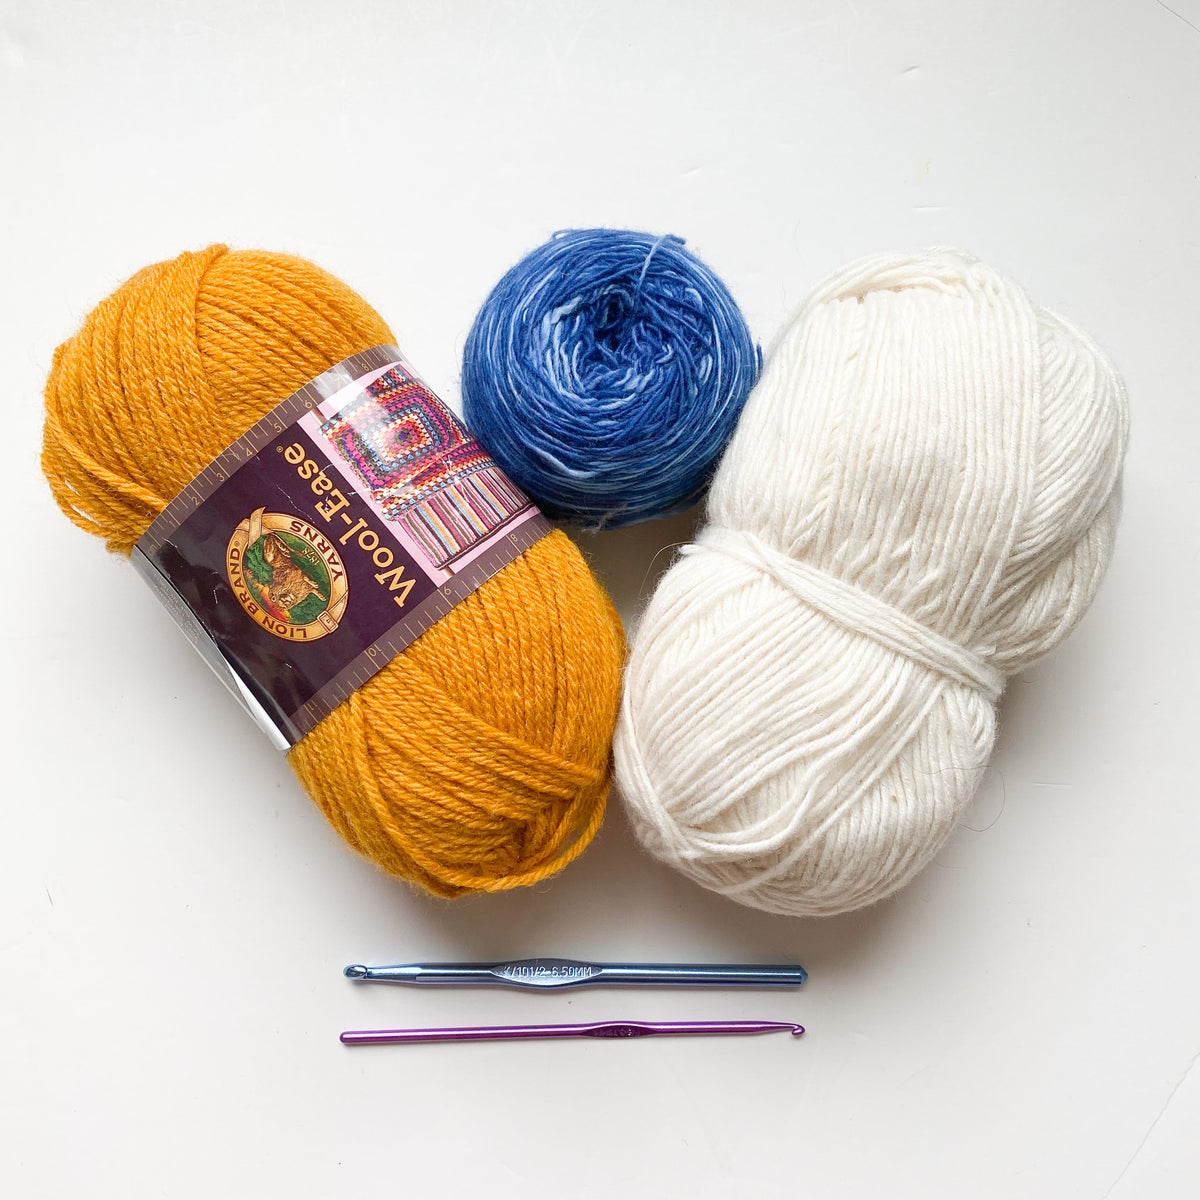 Crochet Kit / DIY Crochet Kit Dishcloth Kit / Simple Crochet Beginner Kit /  Eco-friendly Sustainable Recycled Gift for Crocheter -  UK